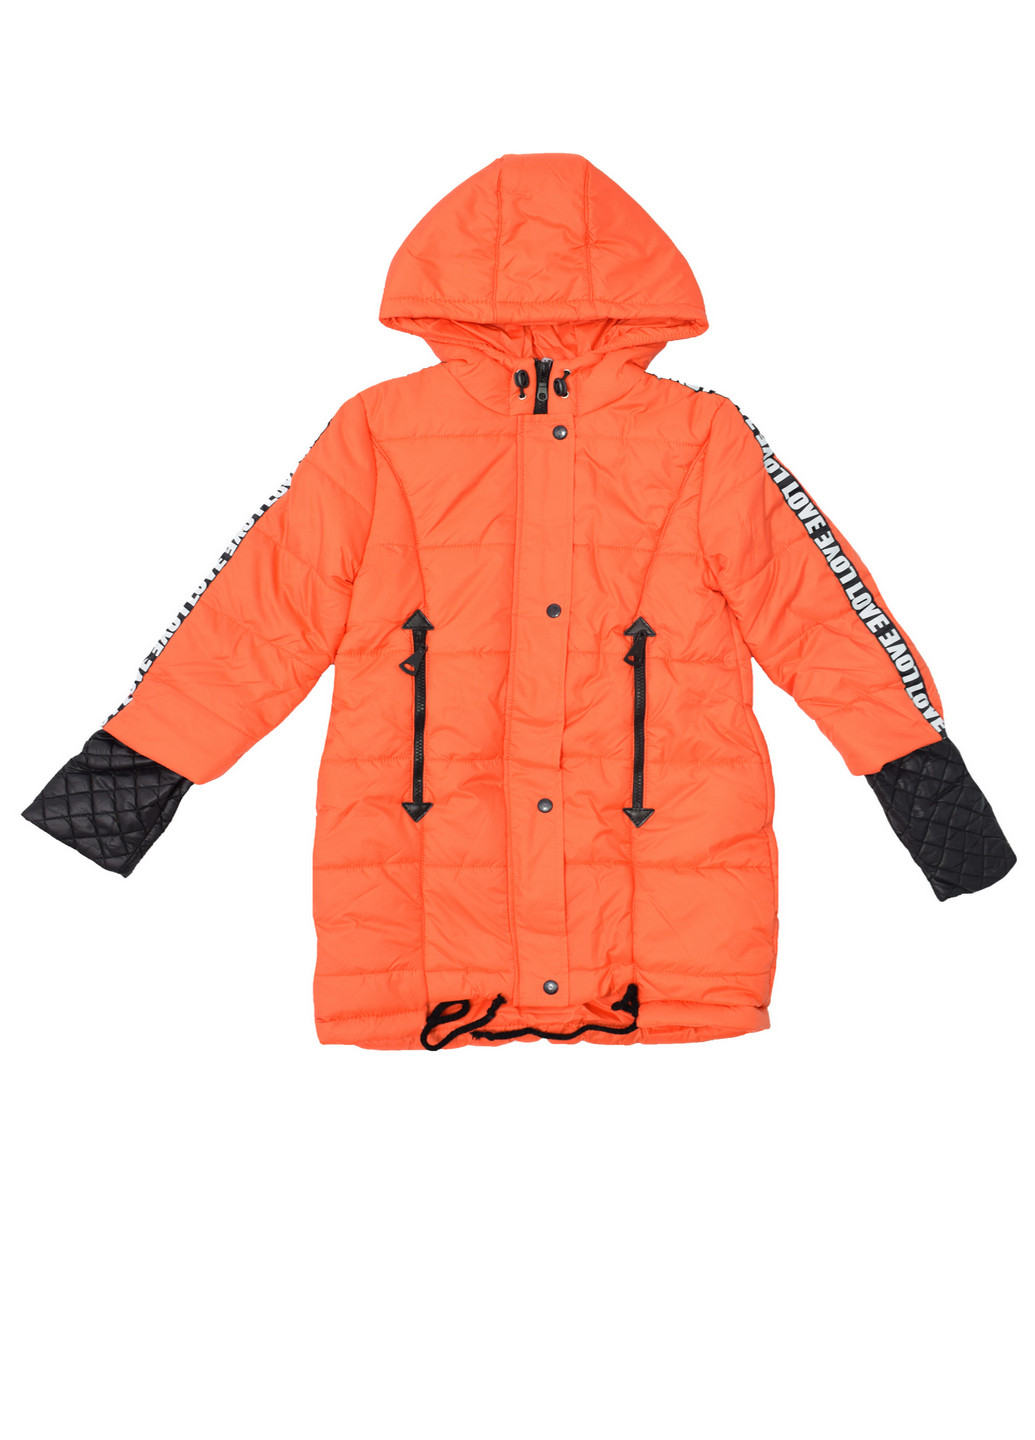 Оранжевая демисезонная куртка для девочки демисезонная Luxik